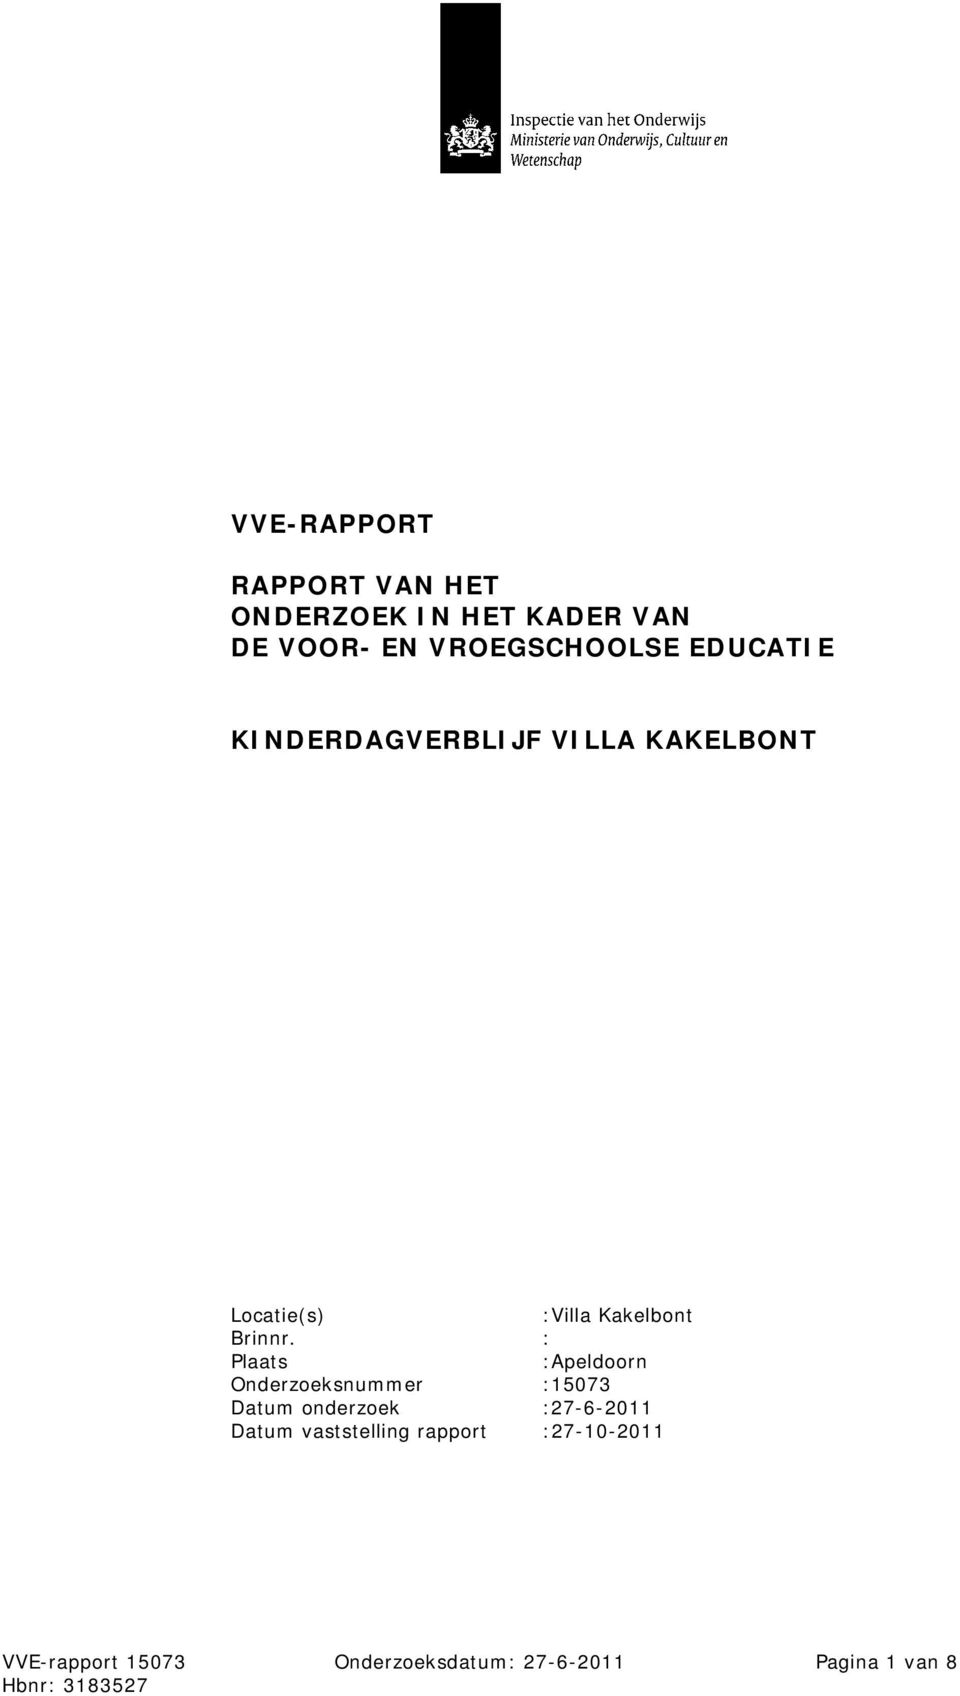 : Plaats :Apeldoorn Onderzoeksnummer :15073 Datum onderzoek :27-6-2011 Datum